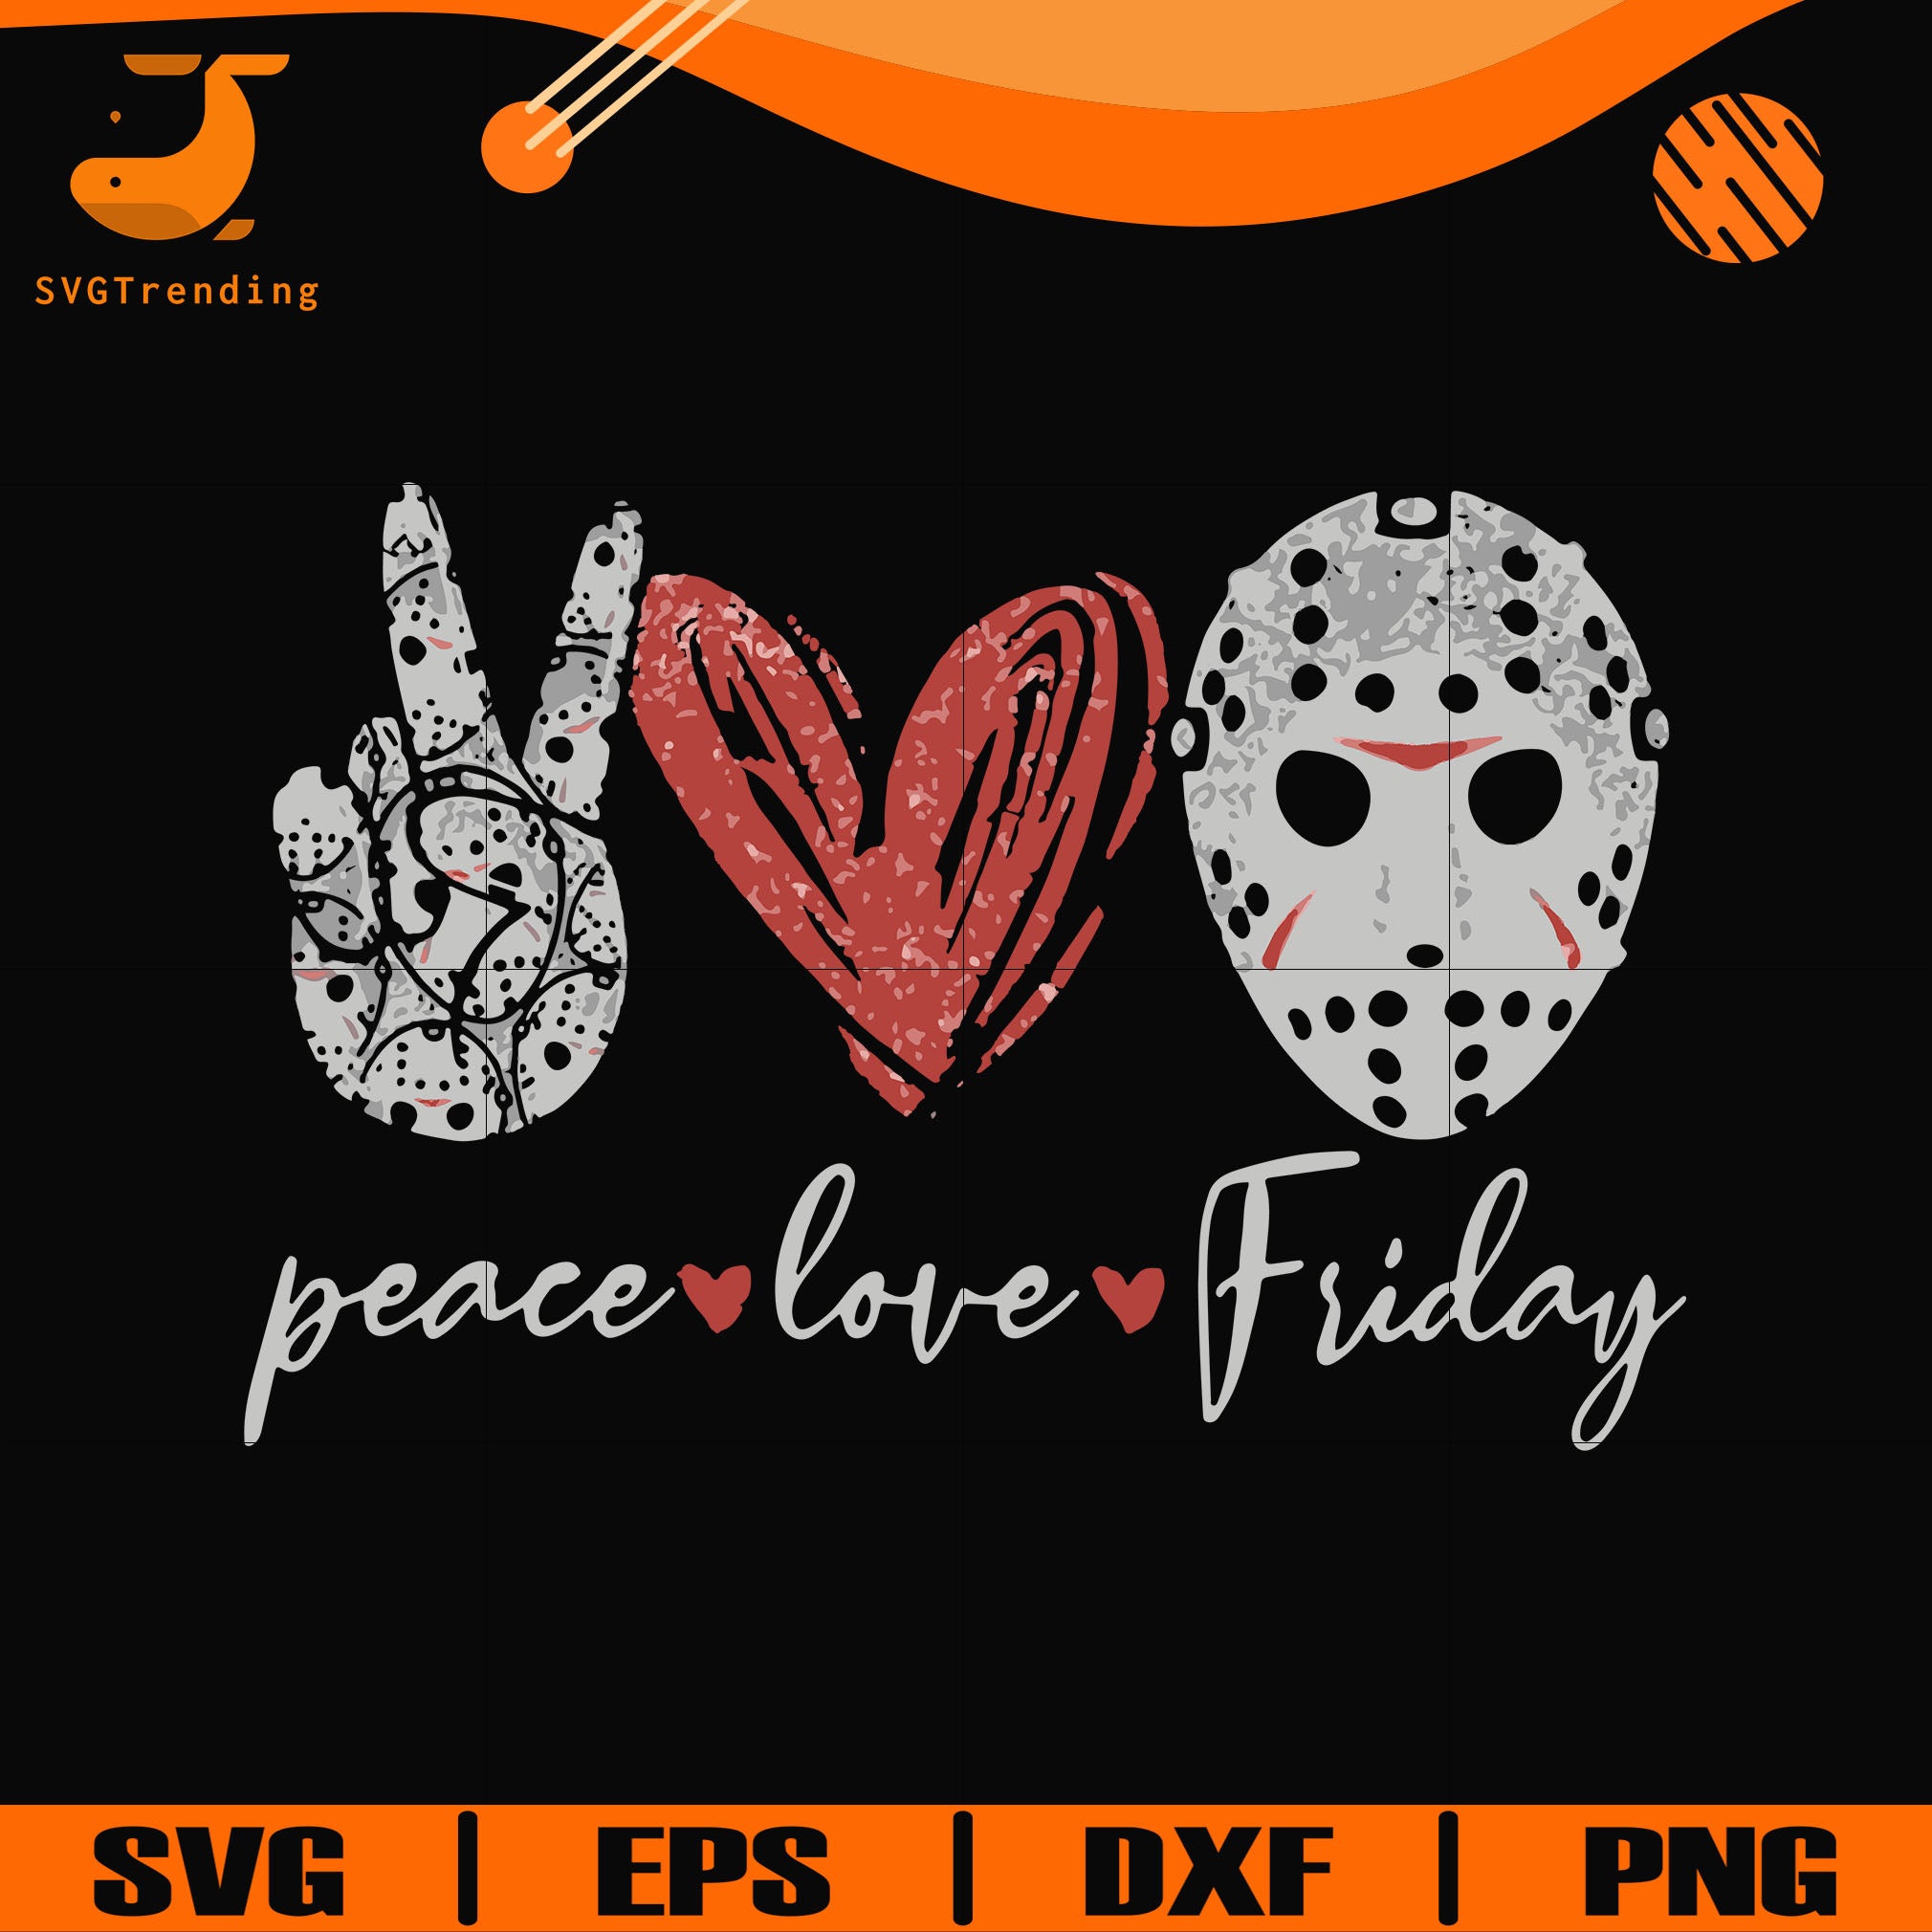 Download Peace Love Friday Svg Png Dxf Eps Digital File Td29072022 Svgtrending